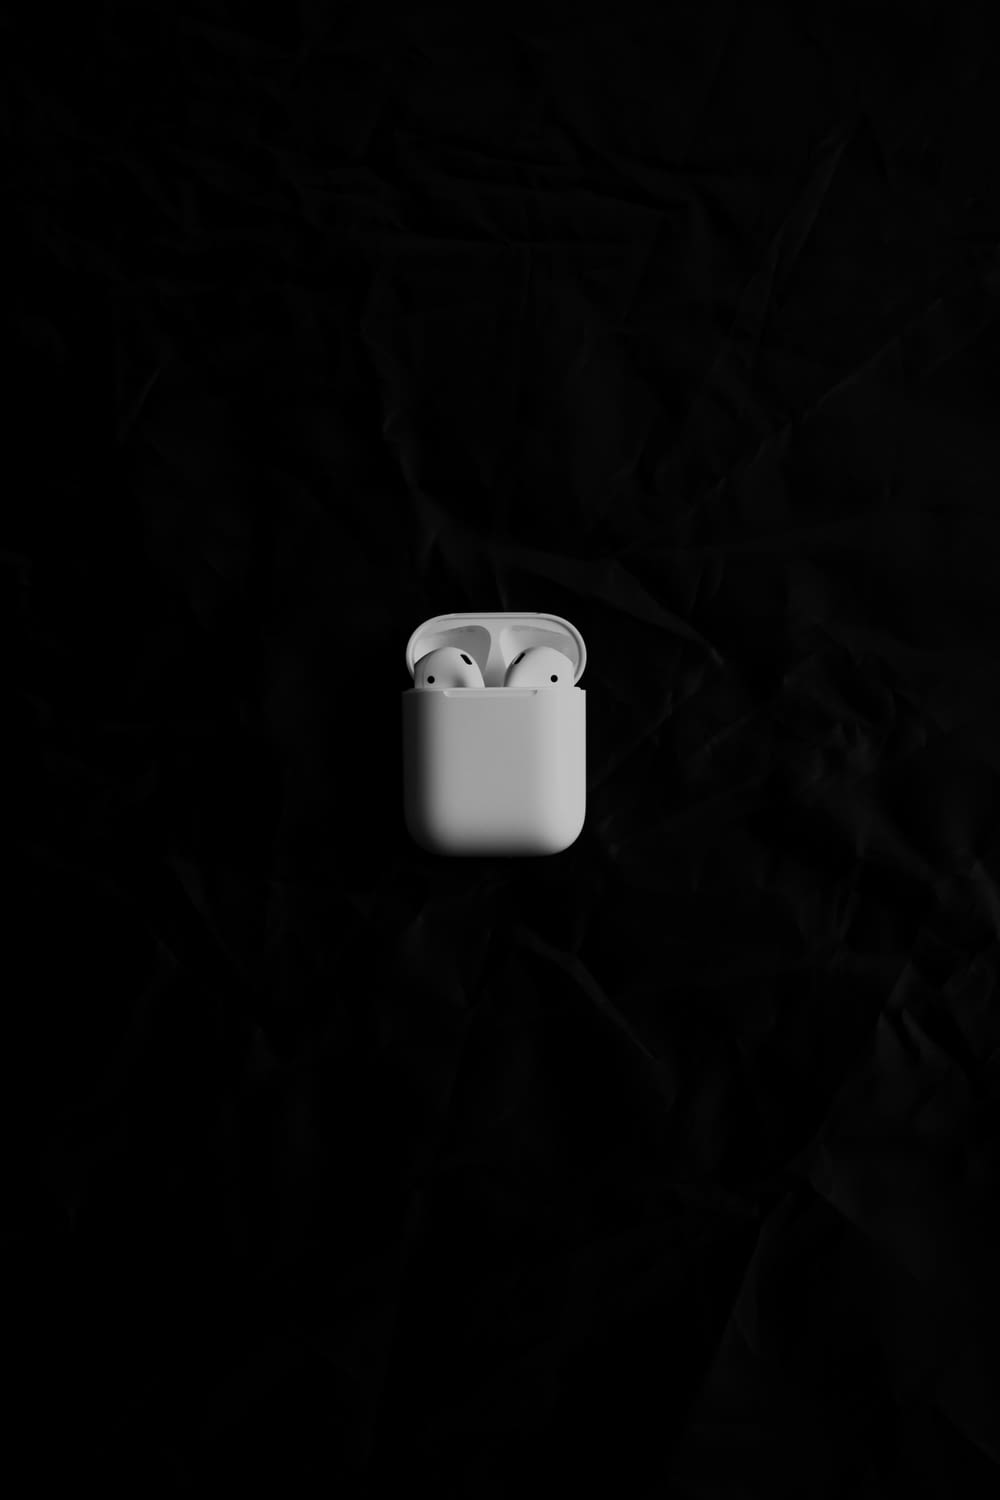 Ein weißer Apfel AirPods sitzt auf einer schwarzen Oberfläche